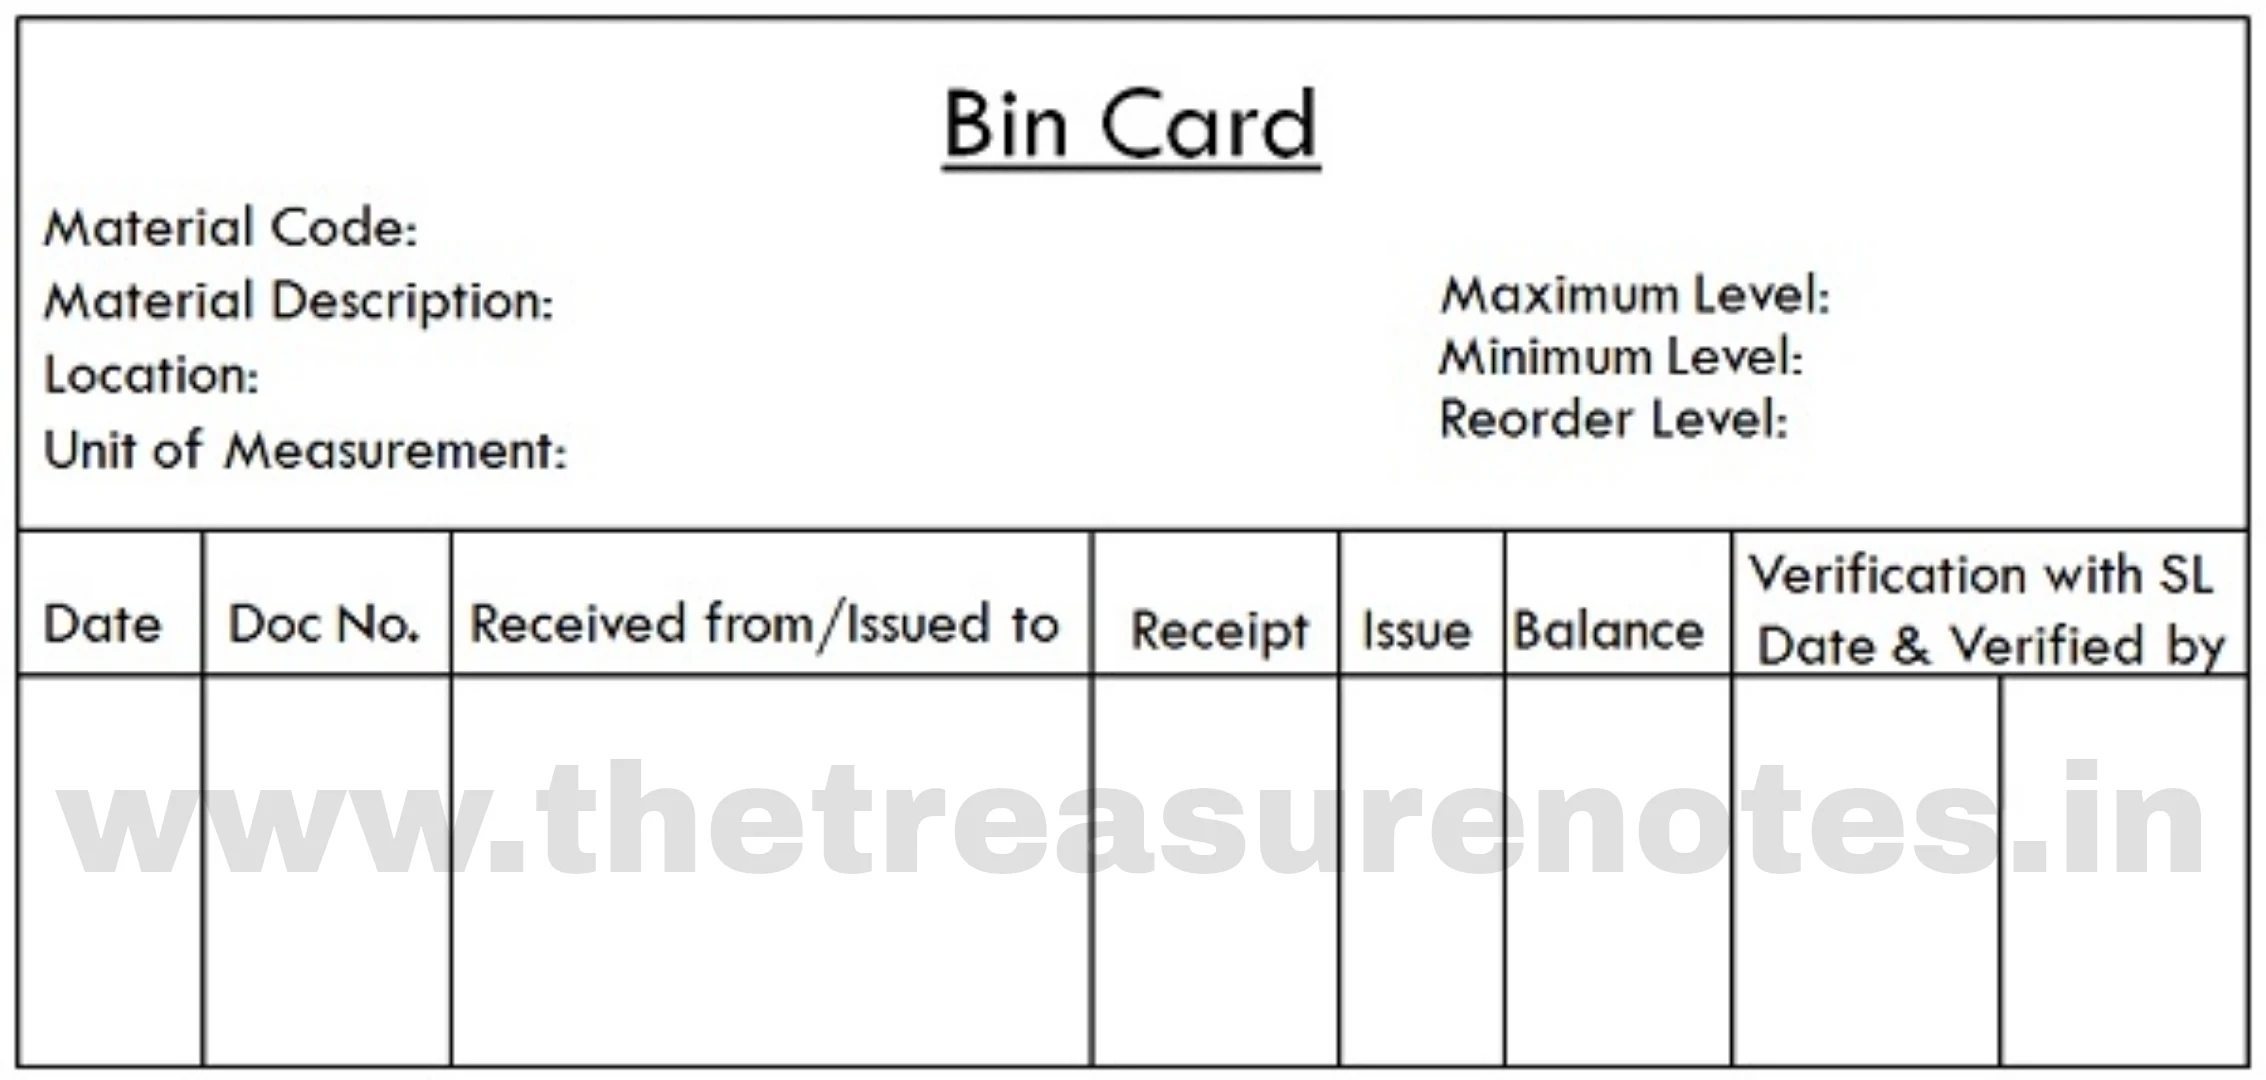 A specimen of Bin card, how to draw bin card, Din card, what is bin card, how to make bin card?